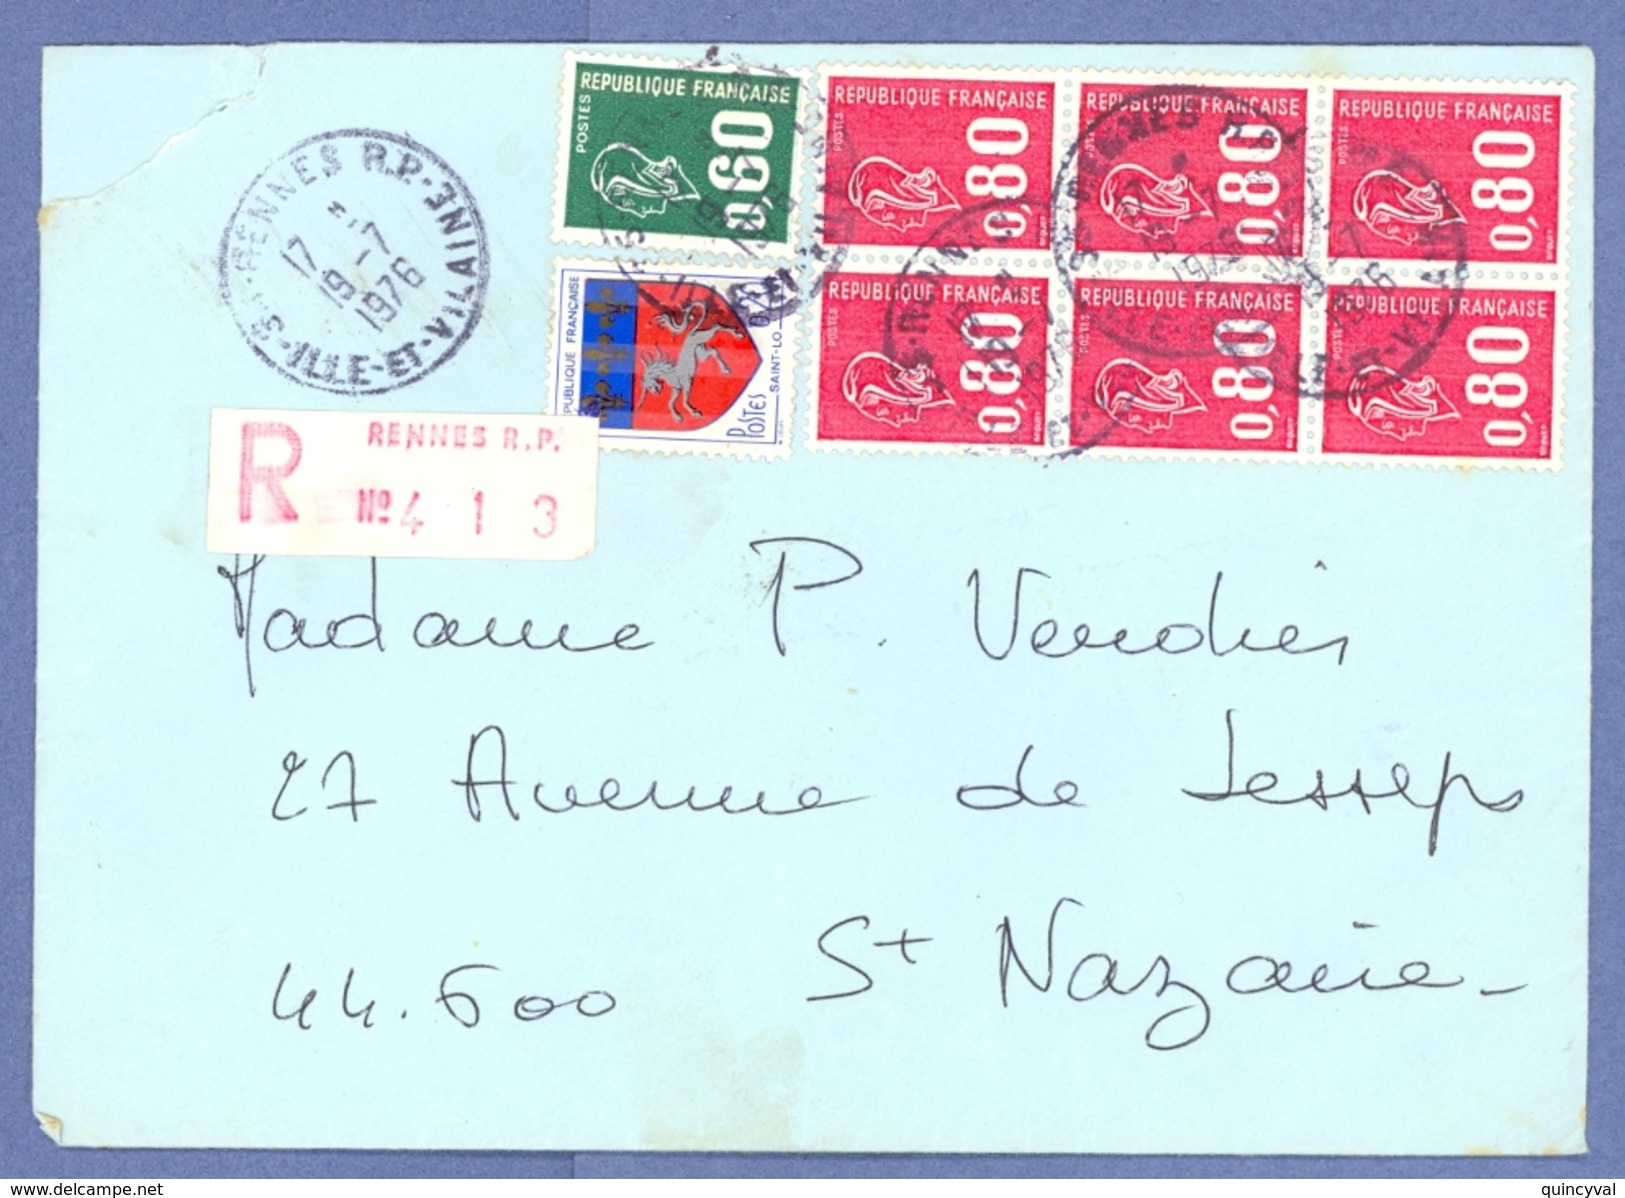 1063 Lettre Recommandé Béquet 80c Rouge 1816  60c Vert 1814 20c Blason St Lo 1510 Ob Rennes RP - Lettres & Documents